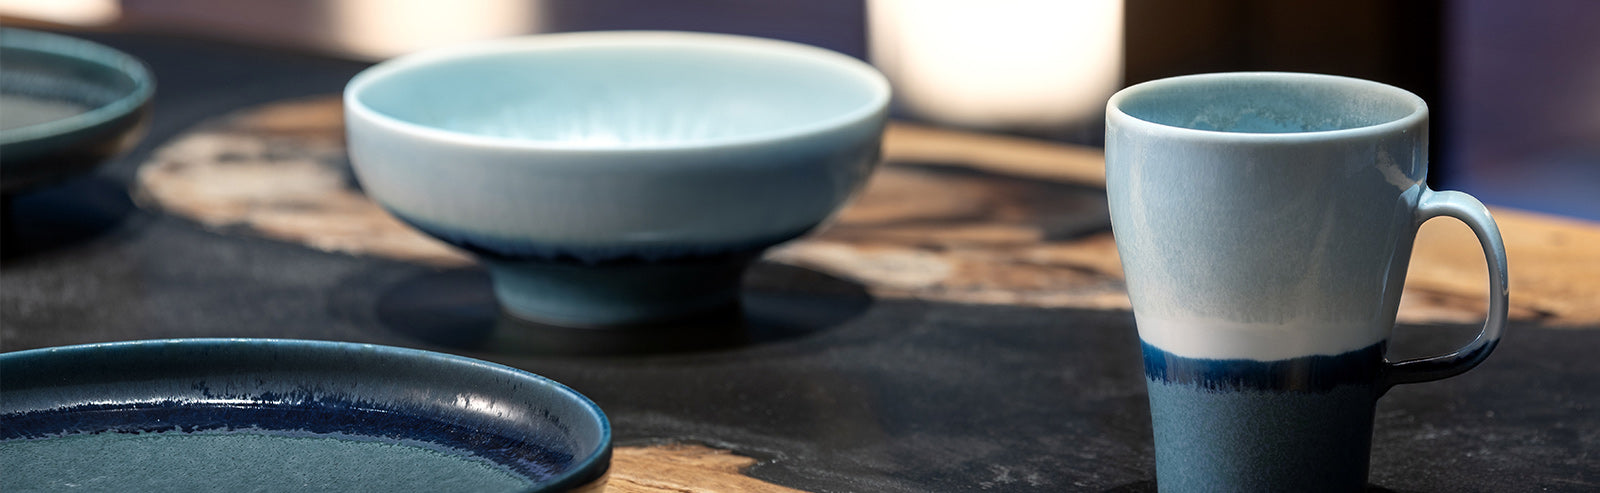 JOHOKO - the Unkai bowl and plate